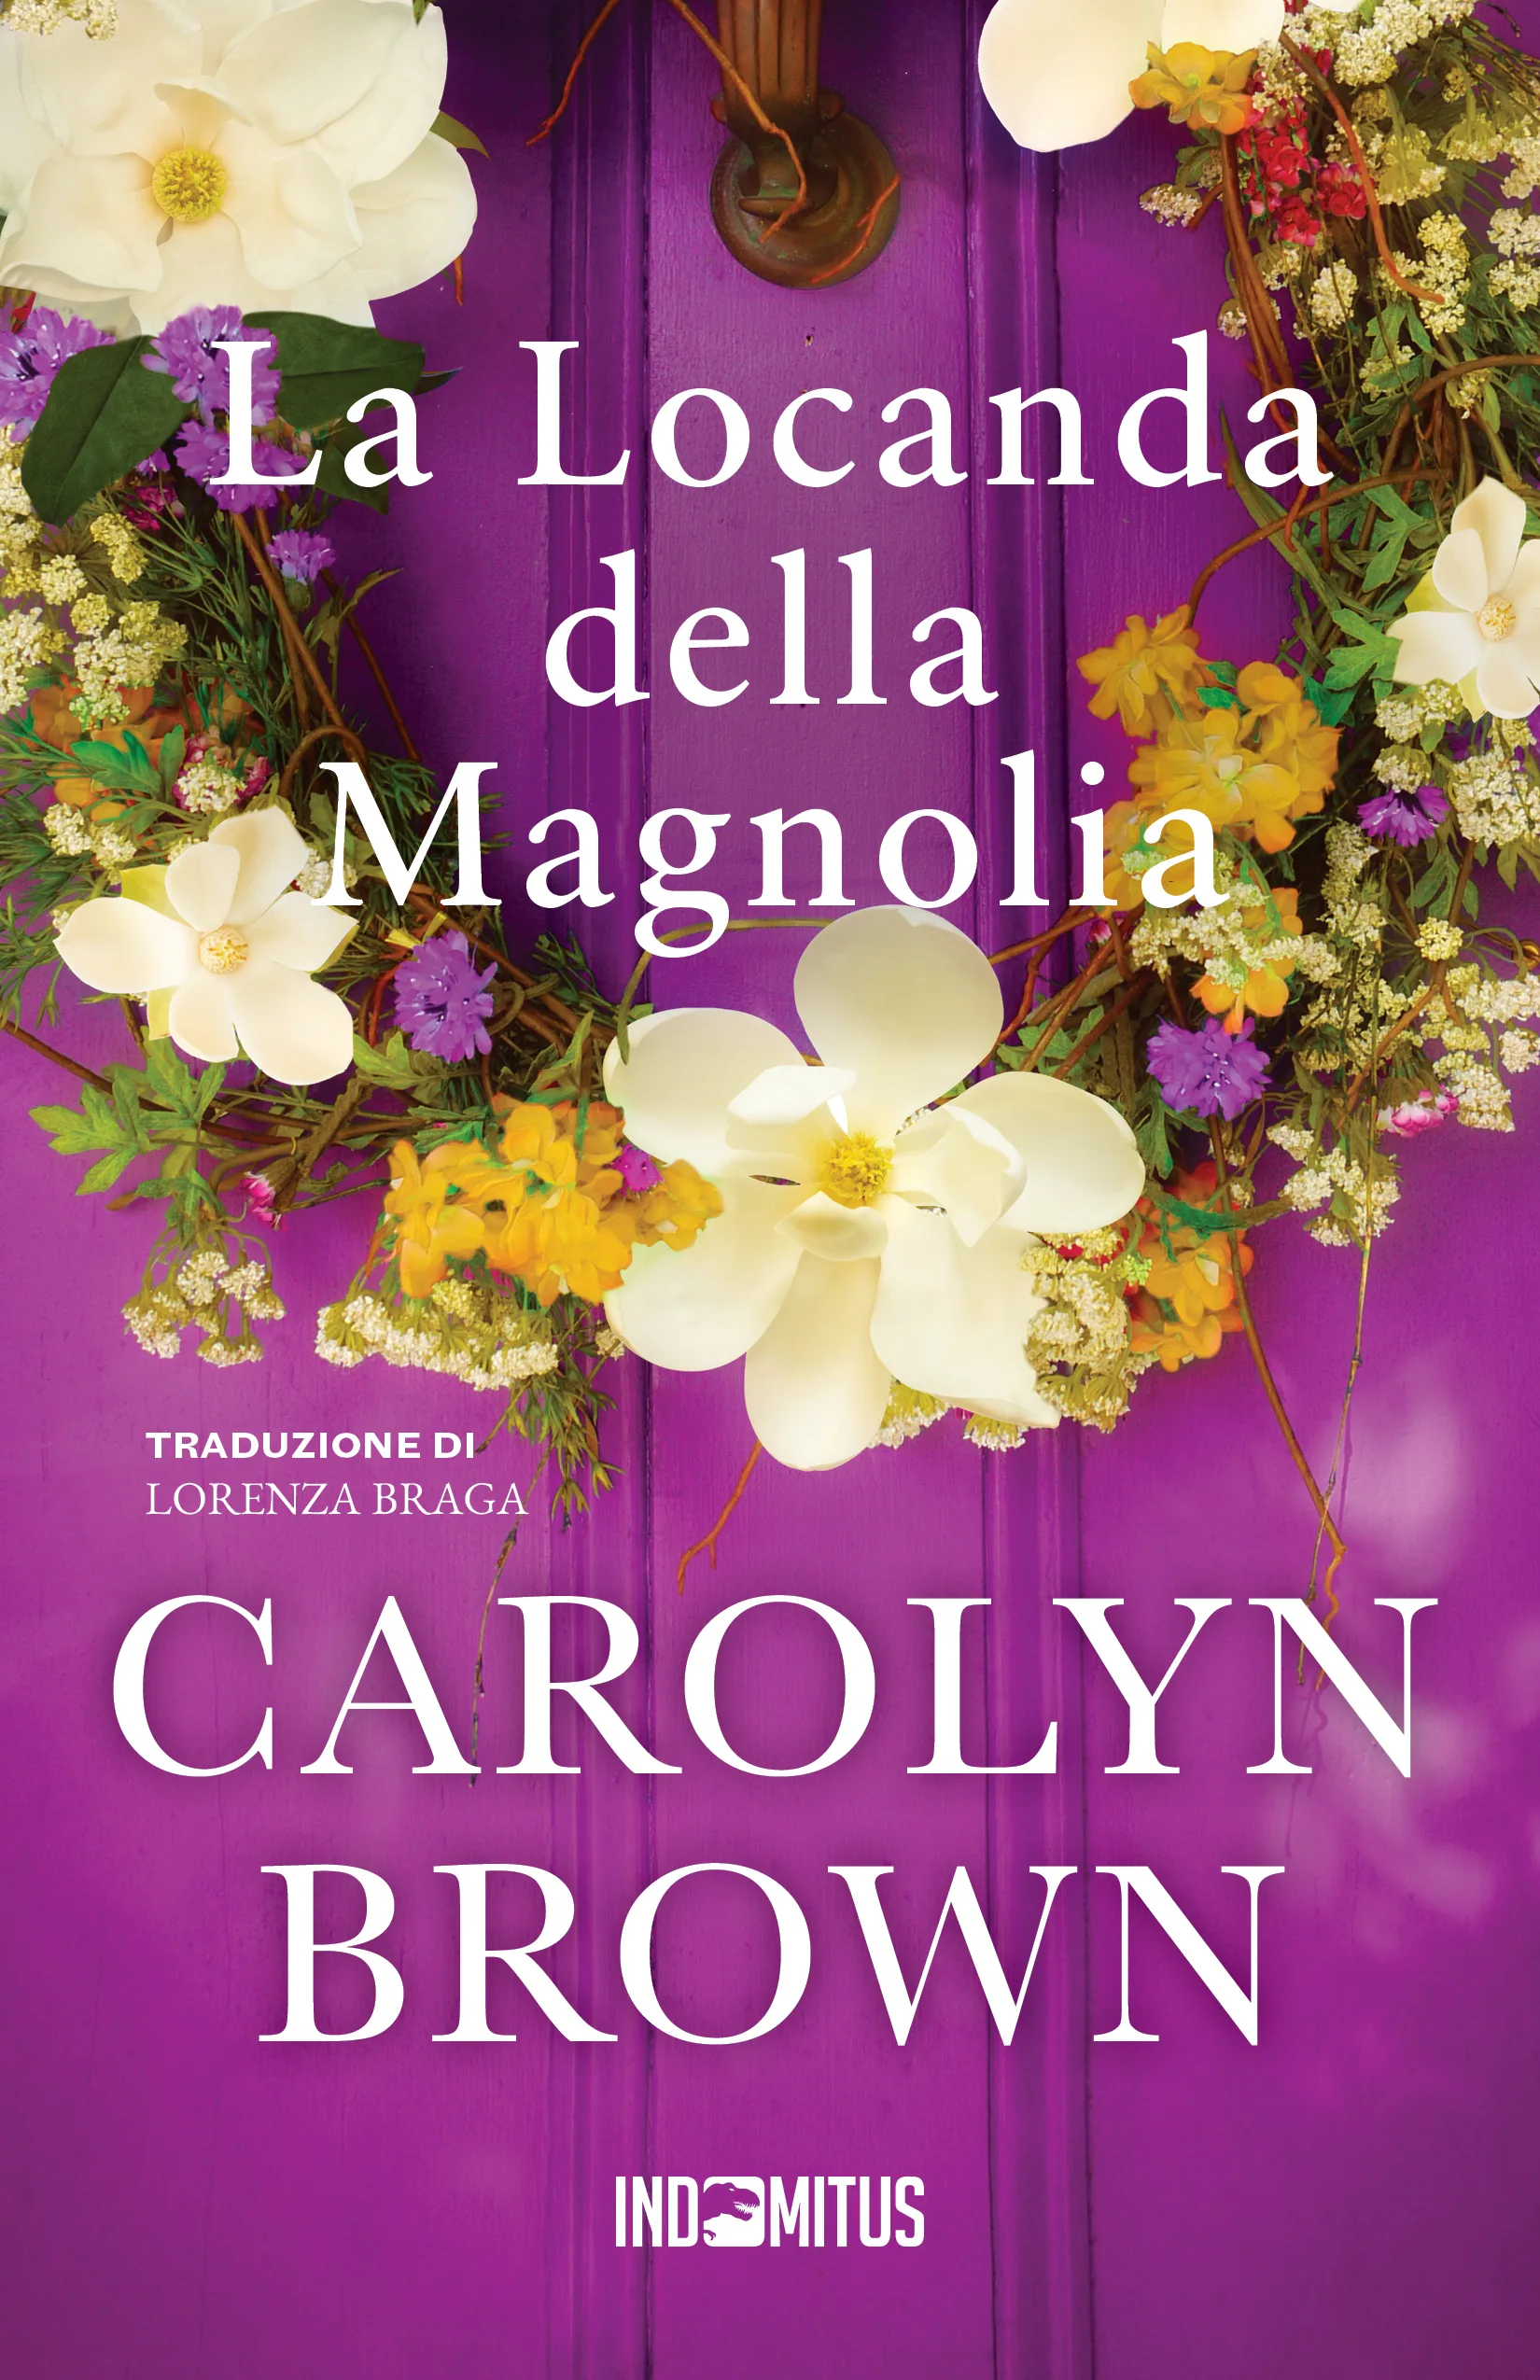 Libro "La Locanda della Magnolia" di Carolyn Brown - Indomitus Publishing